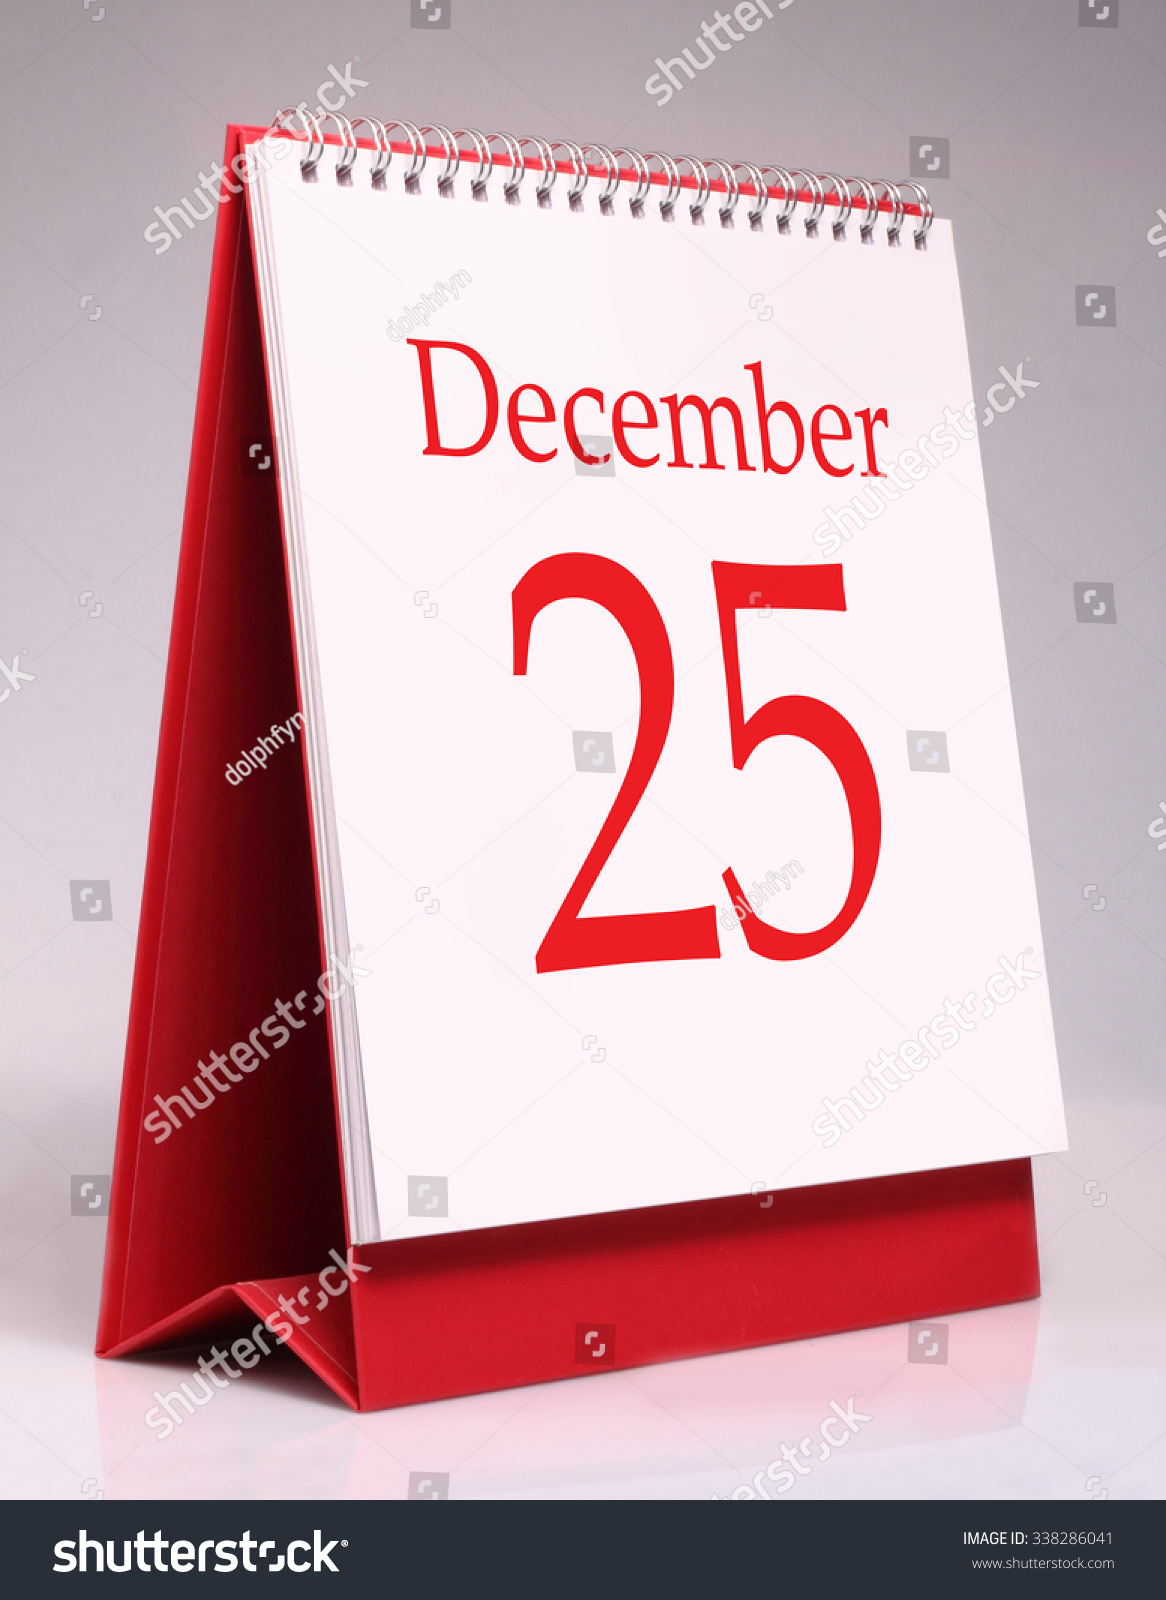 December 25 Desk Calendar Isolated On Stock Photo 338286041 Shutterstock